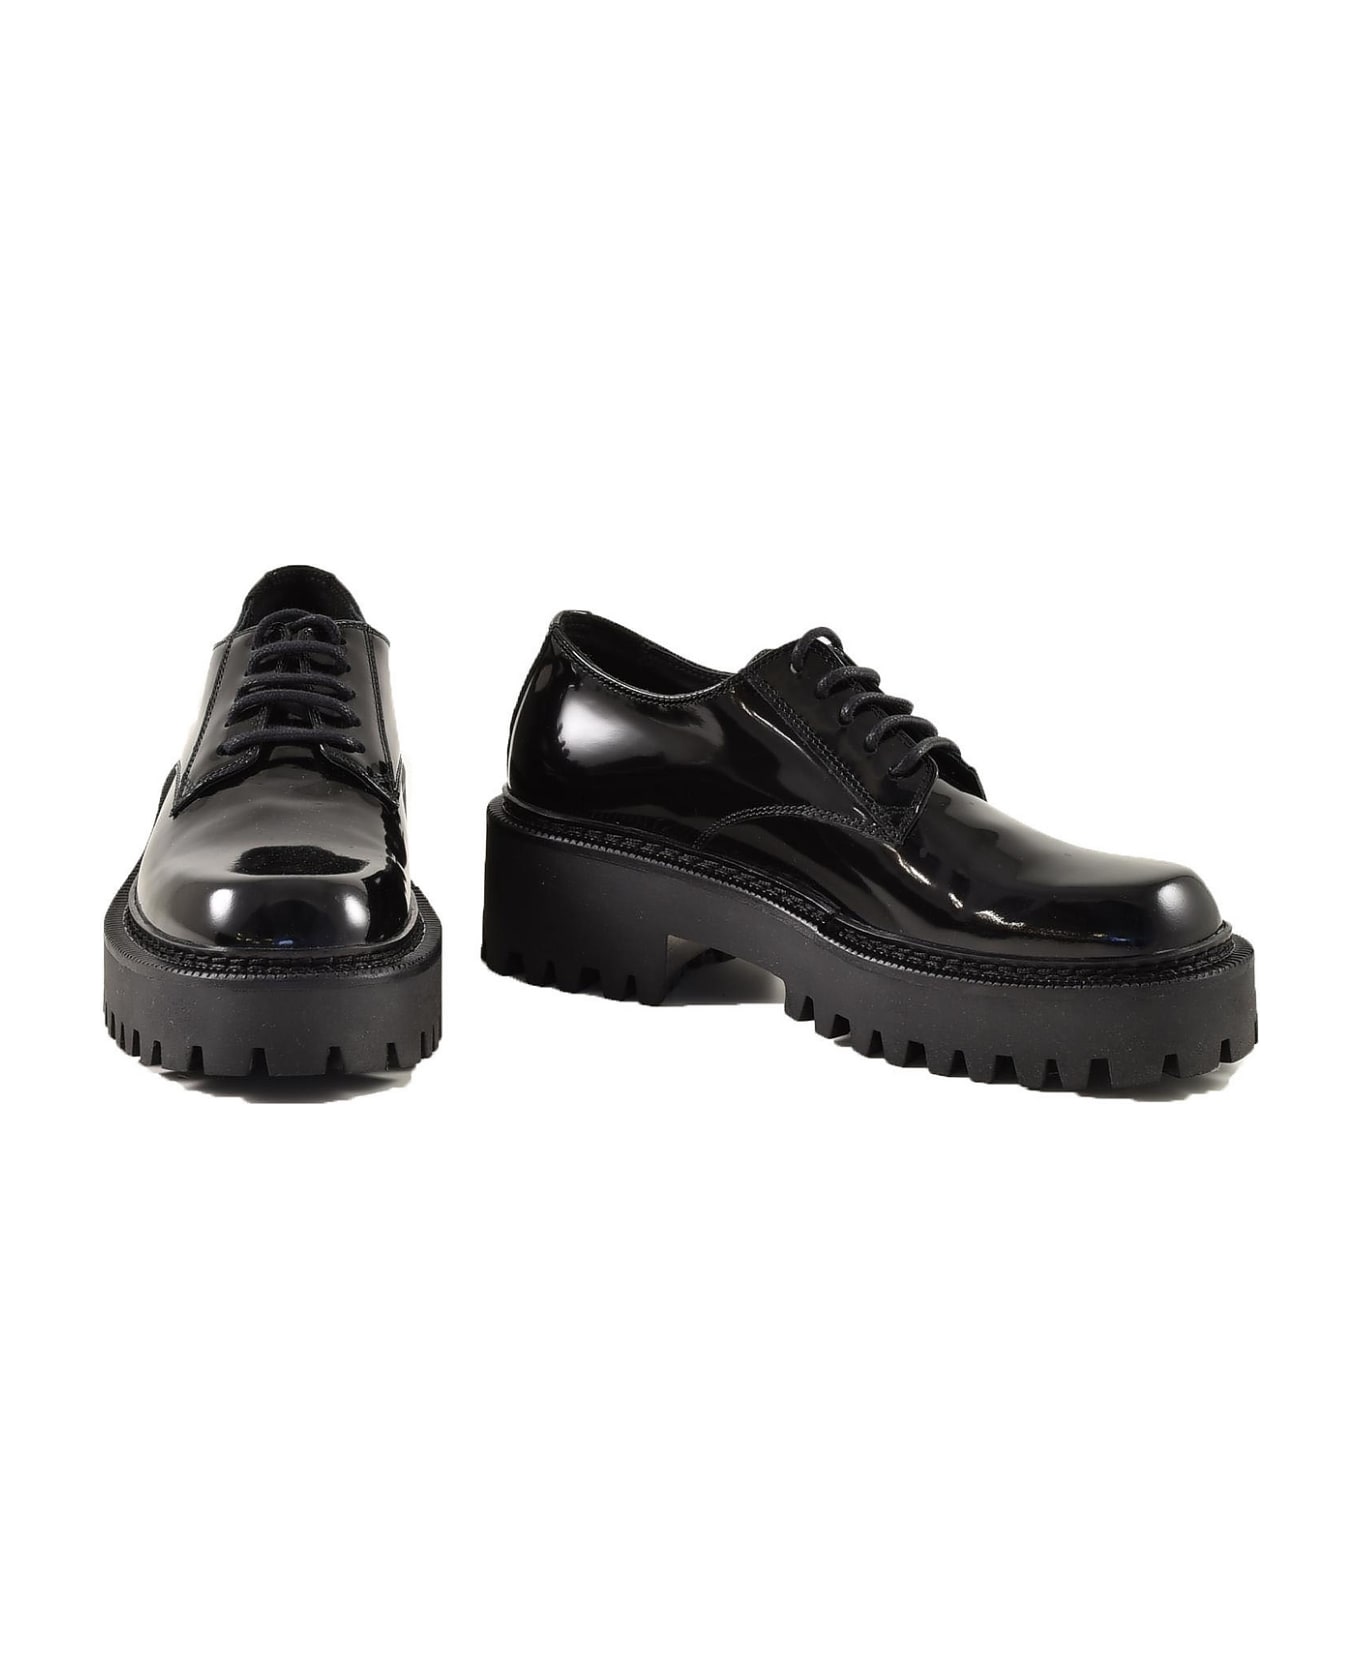 Vic Matié Women's Black Shoes - Black